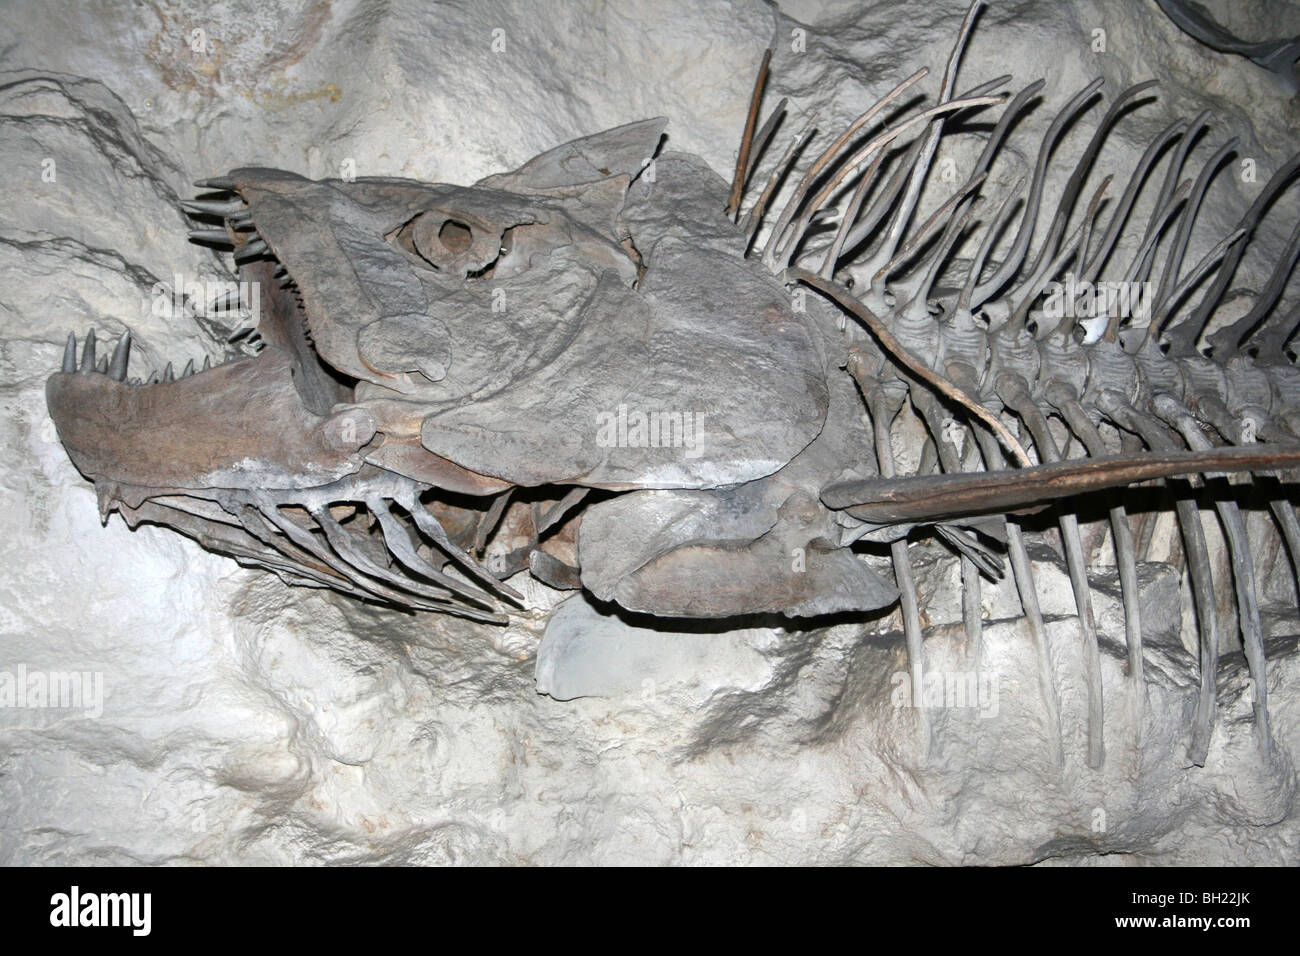 Xiphactinus prähistorischen Knochenfische Modell Replica Stockfoto